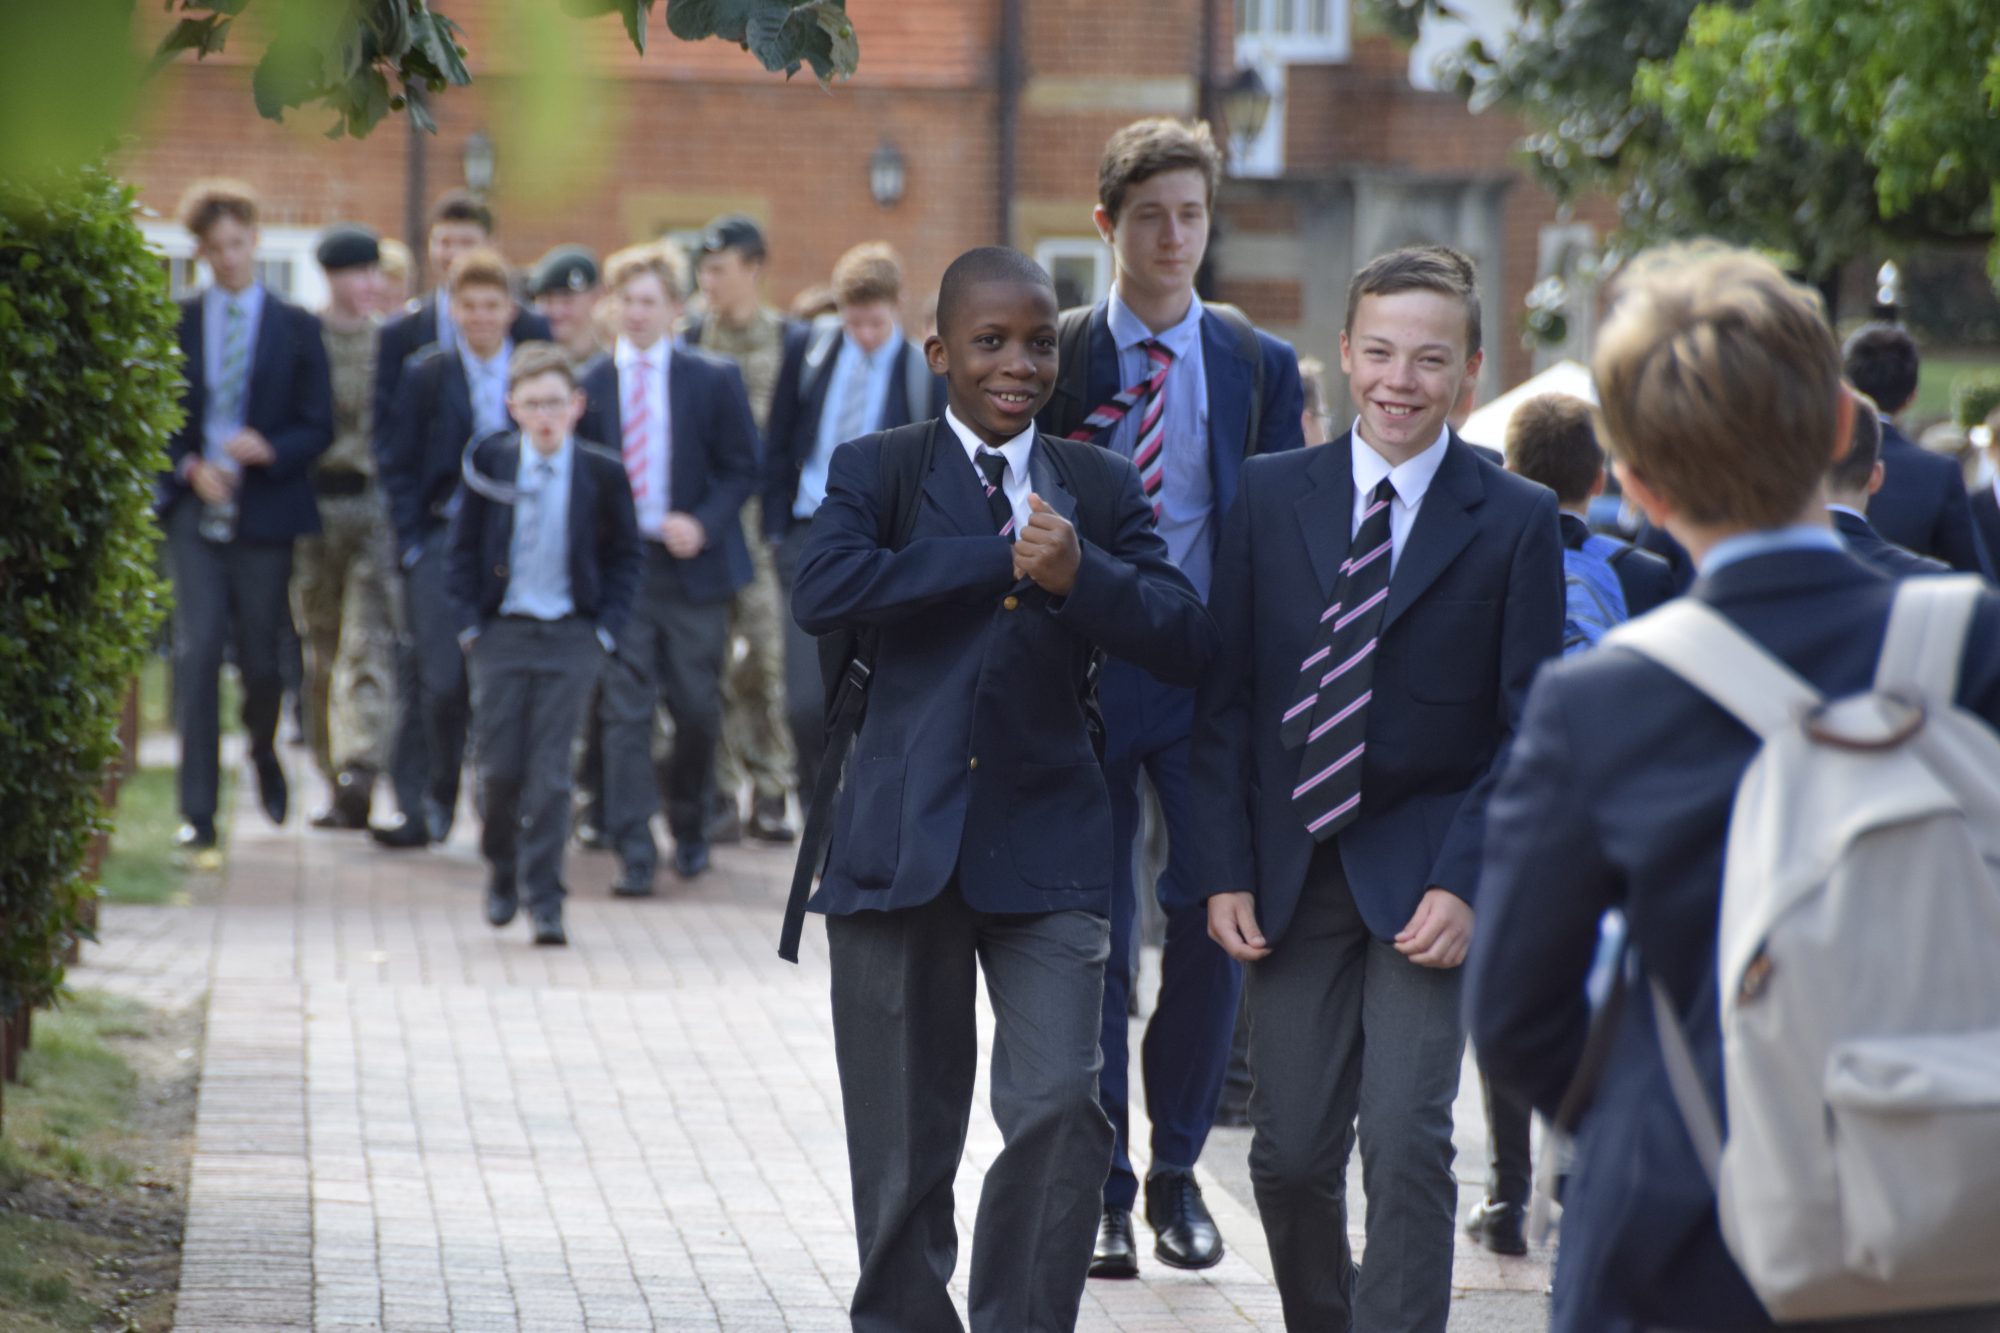 Abingdon School pupils outside